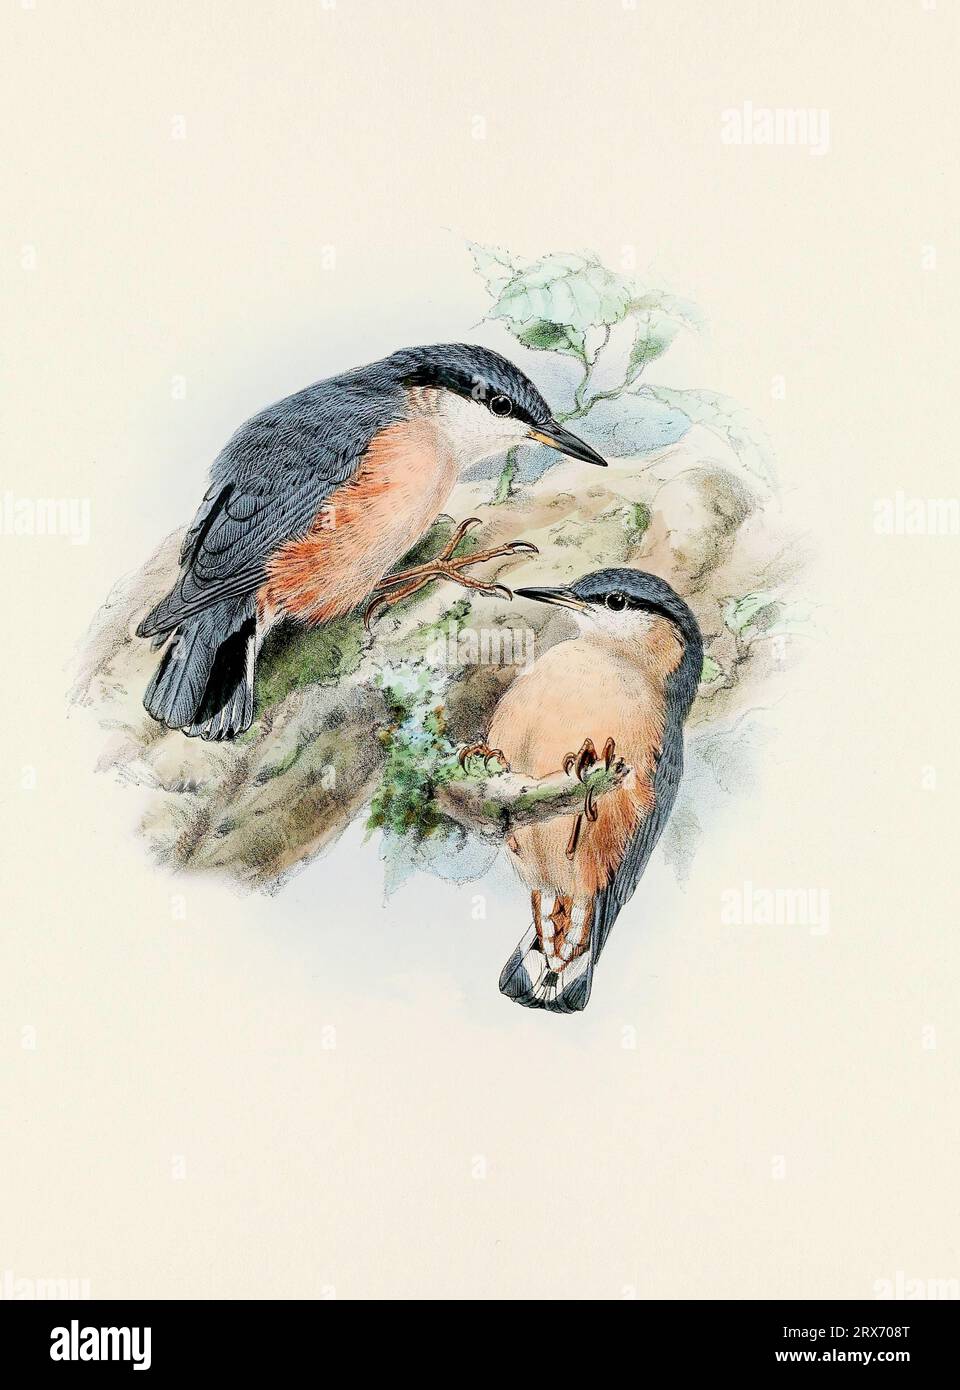 Una splendida opera d'arte digitale di uccelli classici. Illustrazione di uccelli in stile vintage. Foto Stock